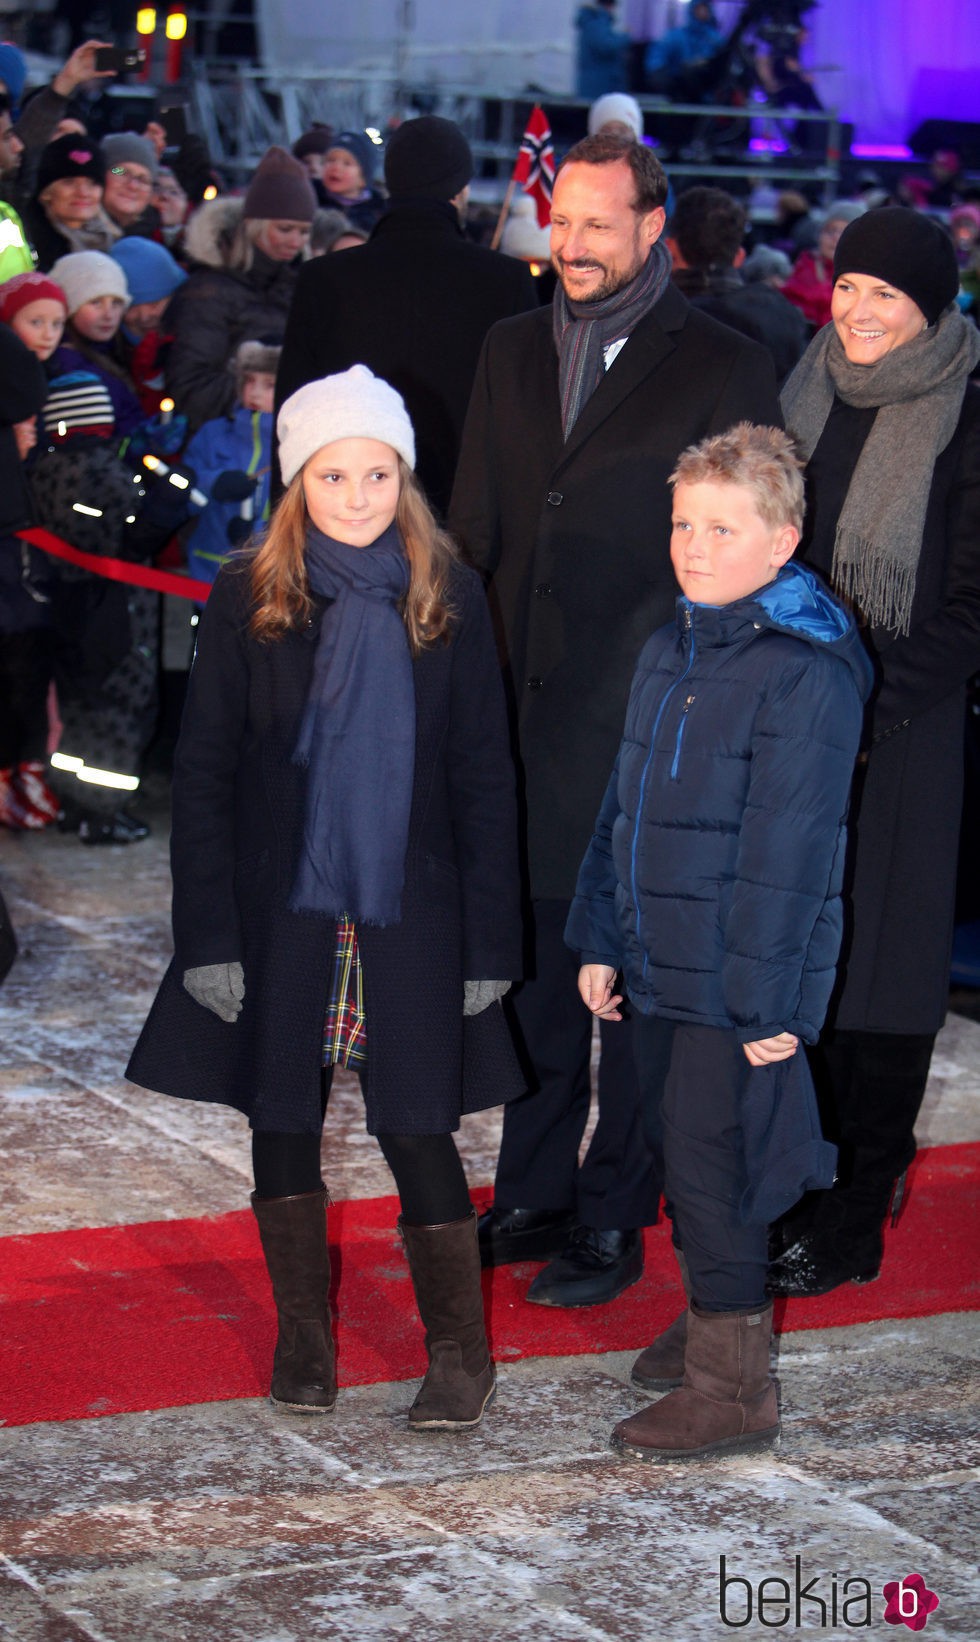 Haakon y Mette-Marit de Noruega con sus hijos Ingrid y Sverre en las celebraciones por el 25 aniversario del reinado de Harald de Noruega